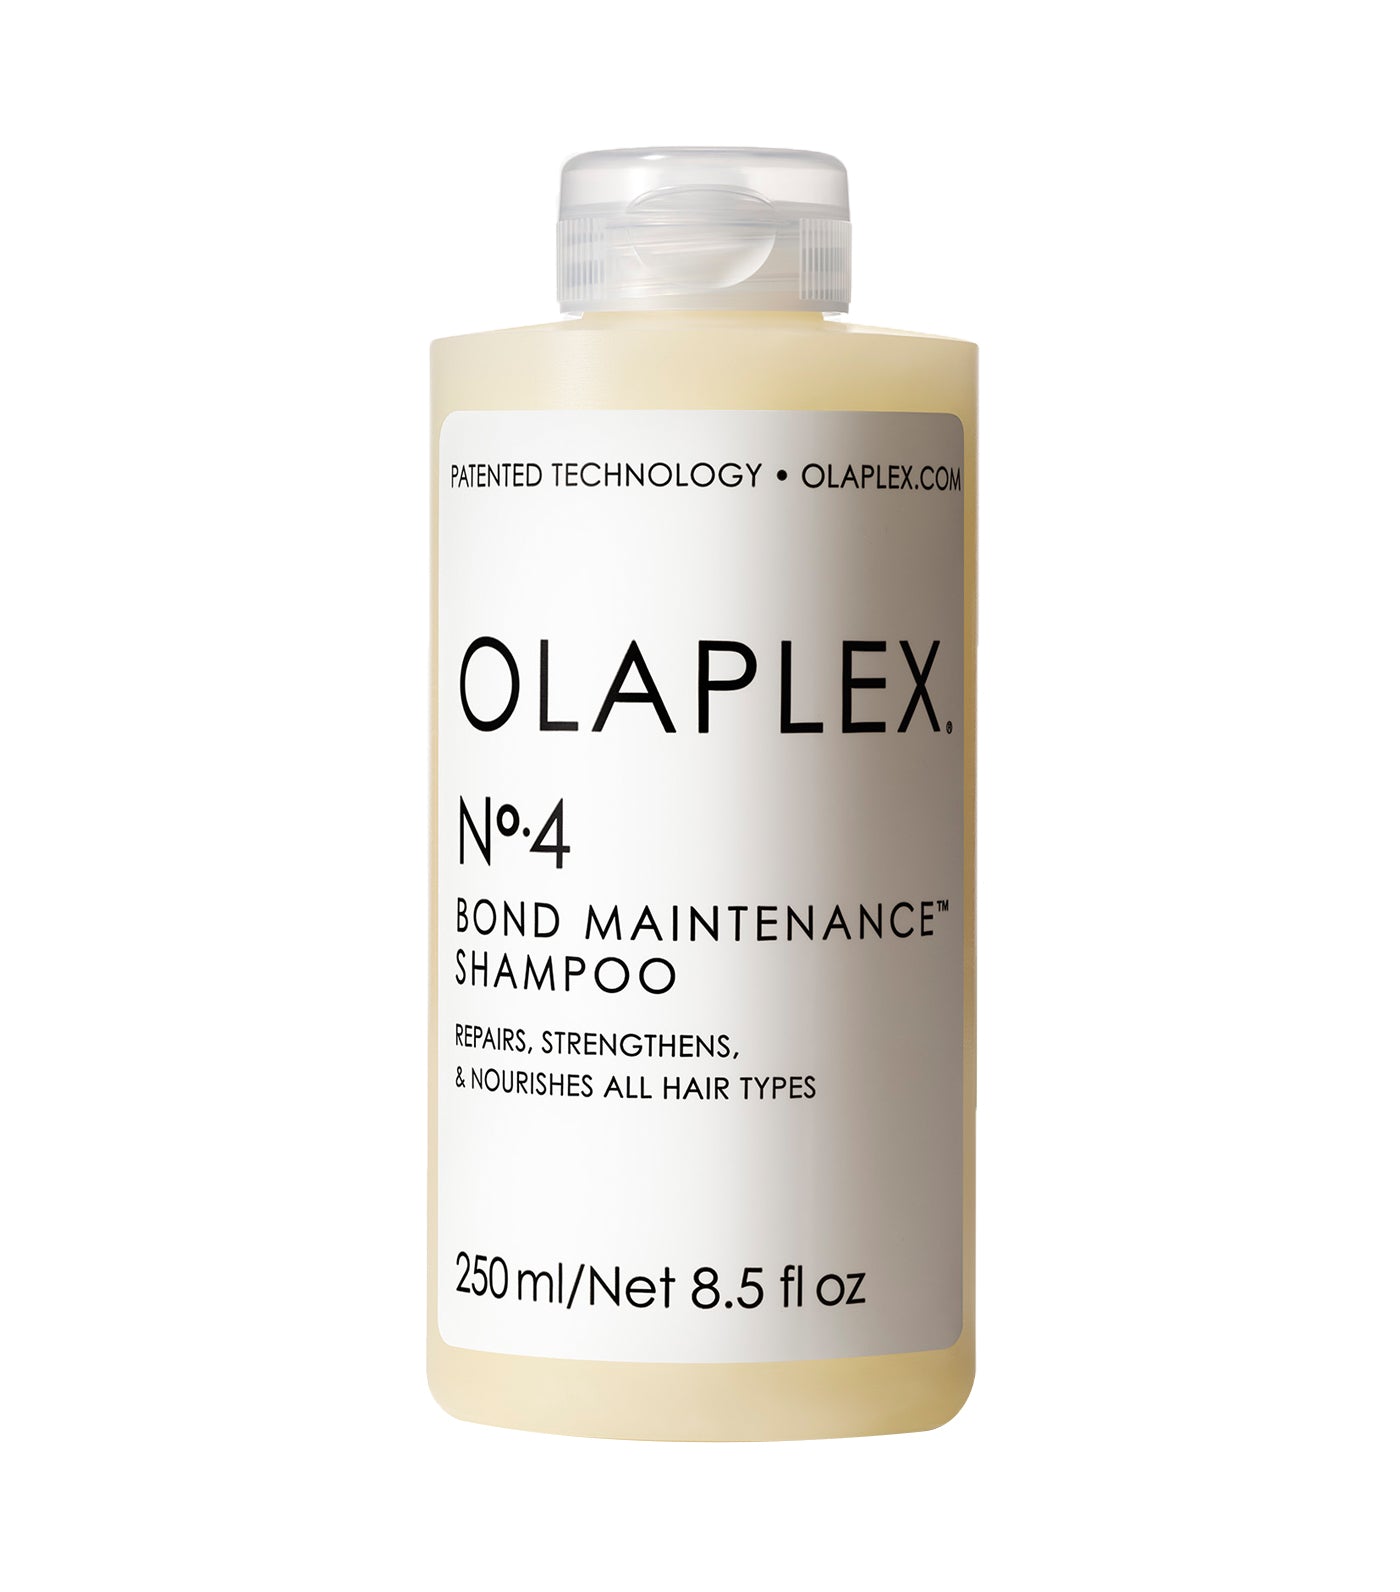 N°. 4 Bond Maintenance Shampoo